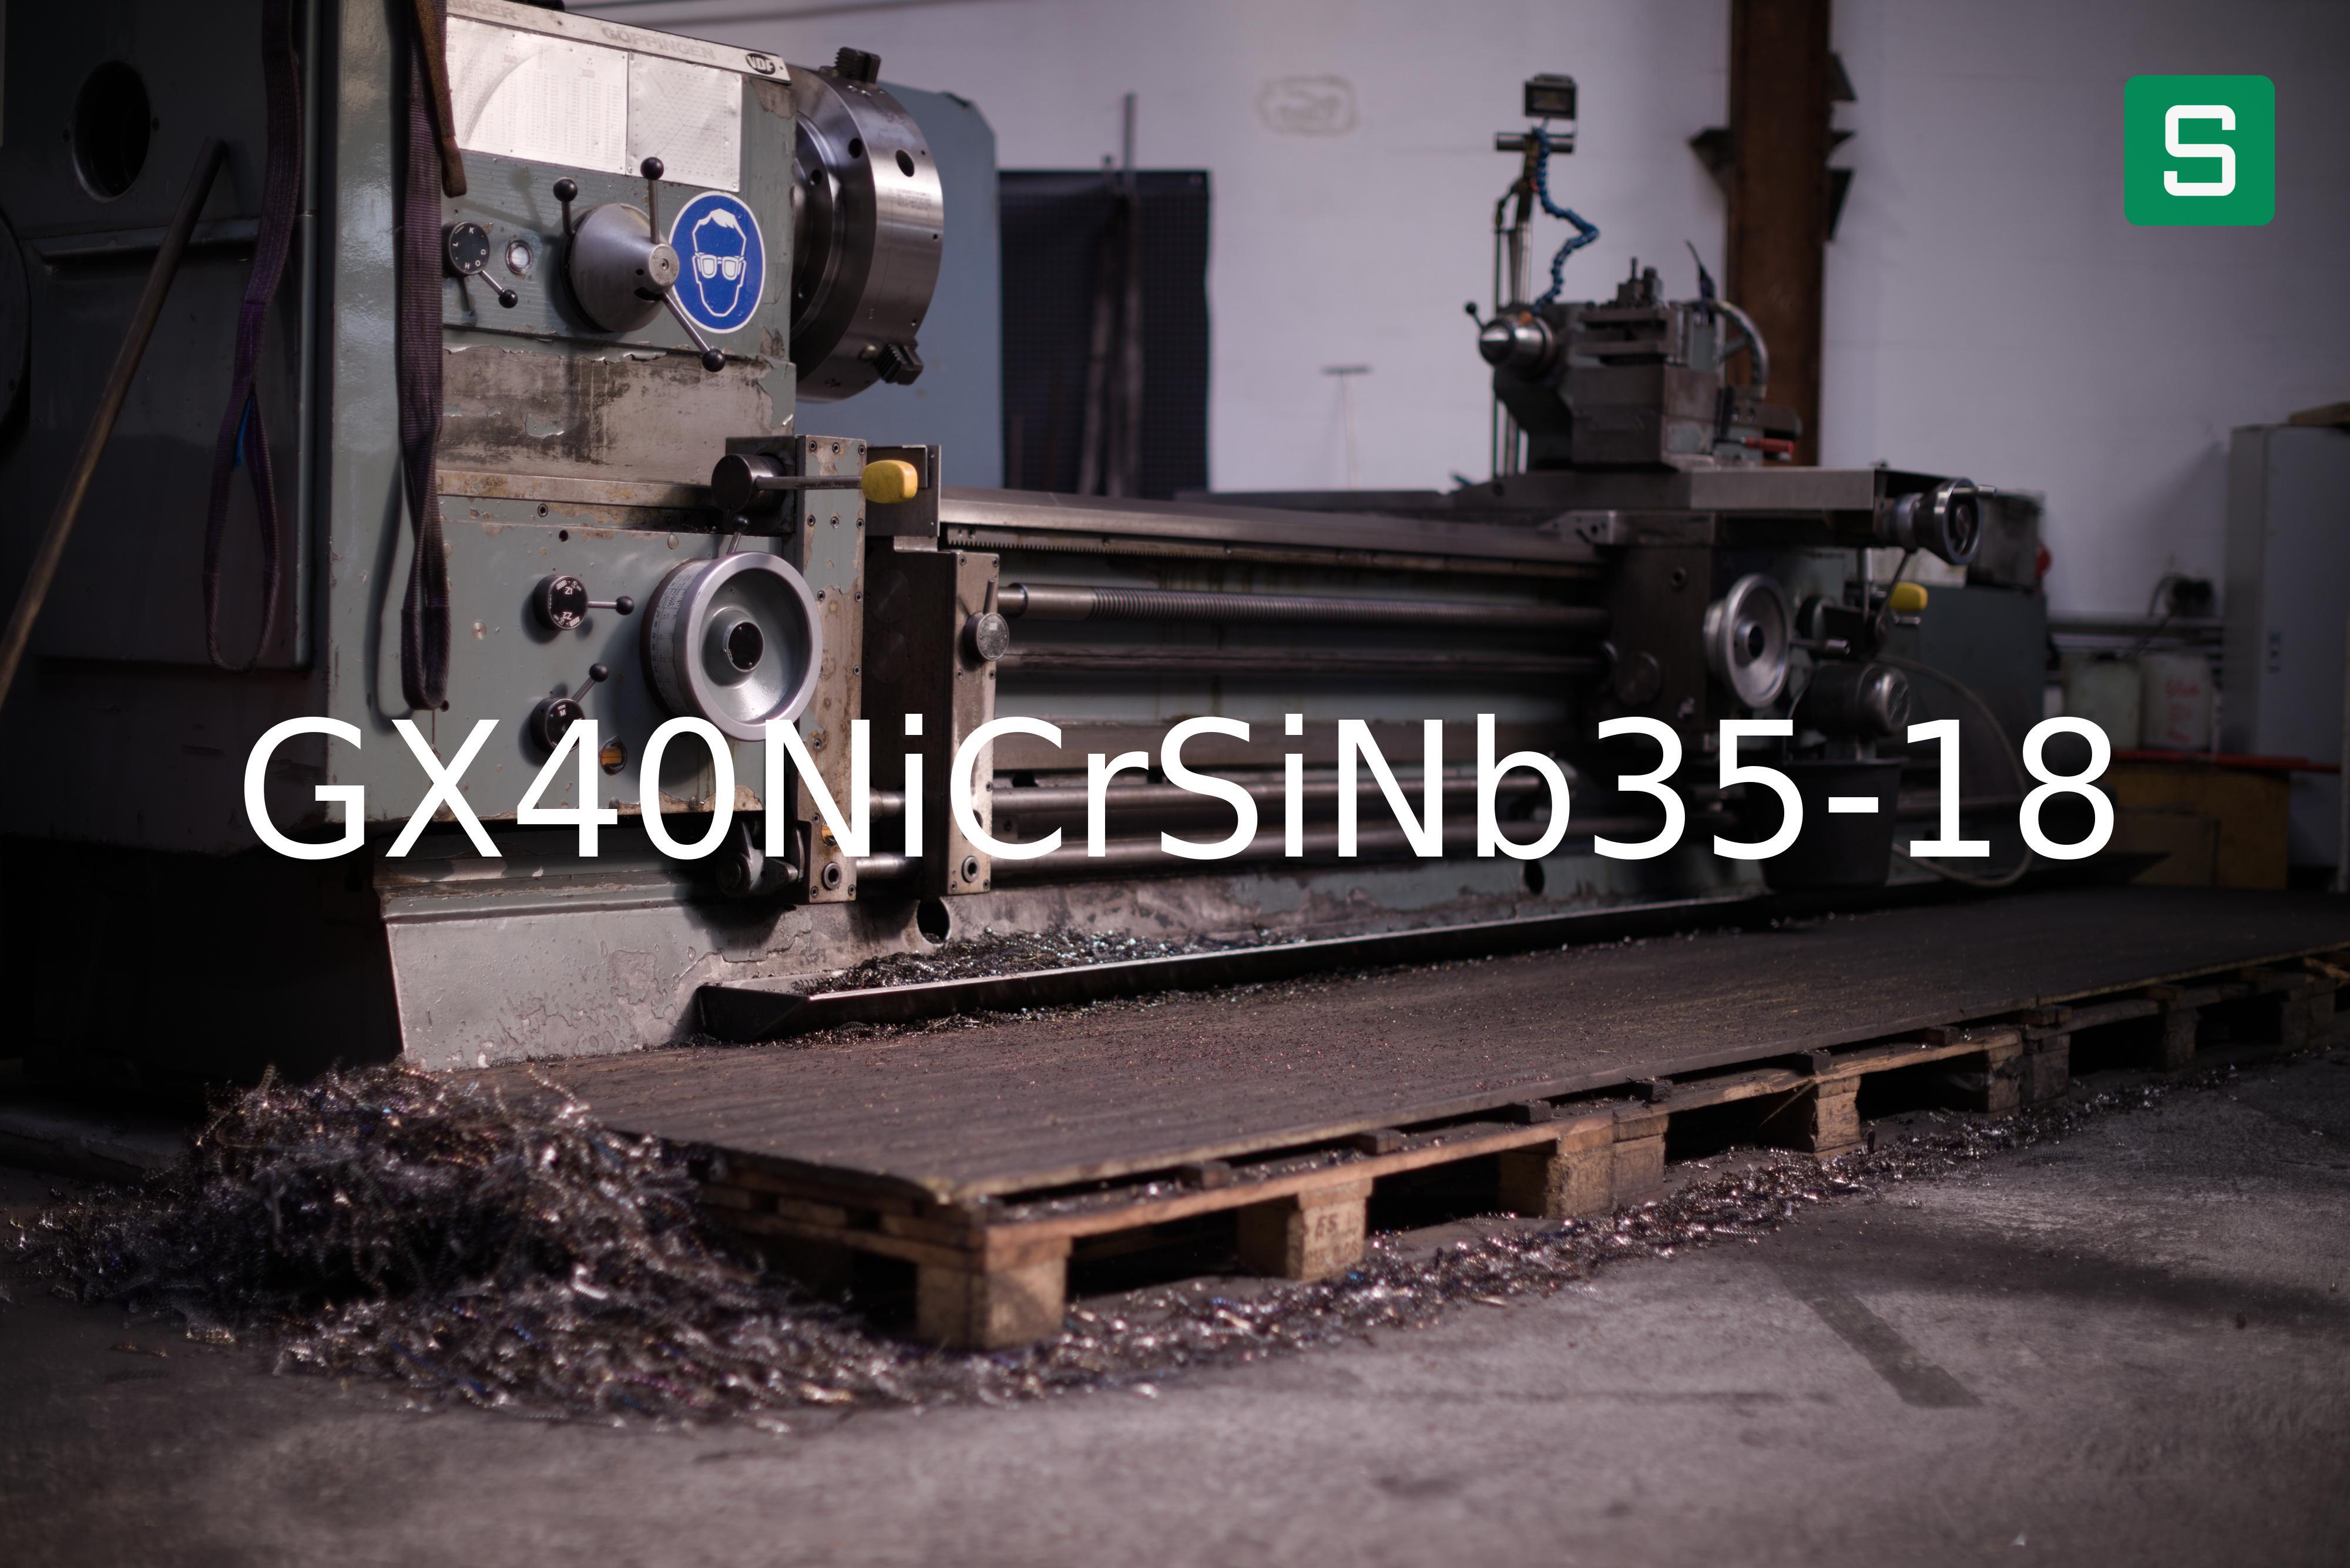 Steel Material: GX40NiCrSiNb35-18